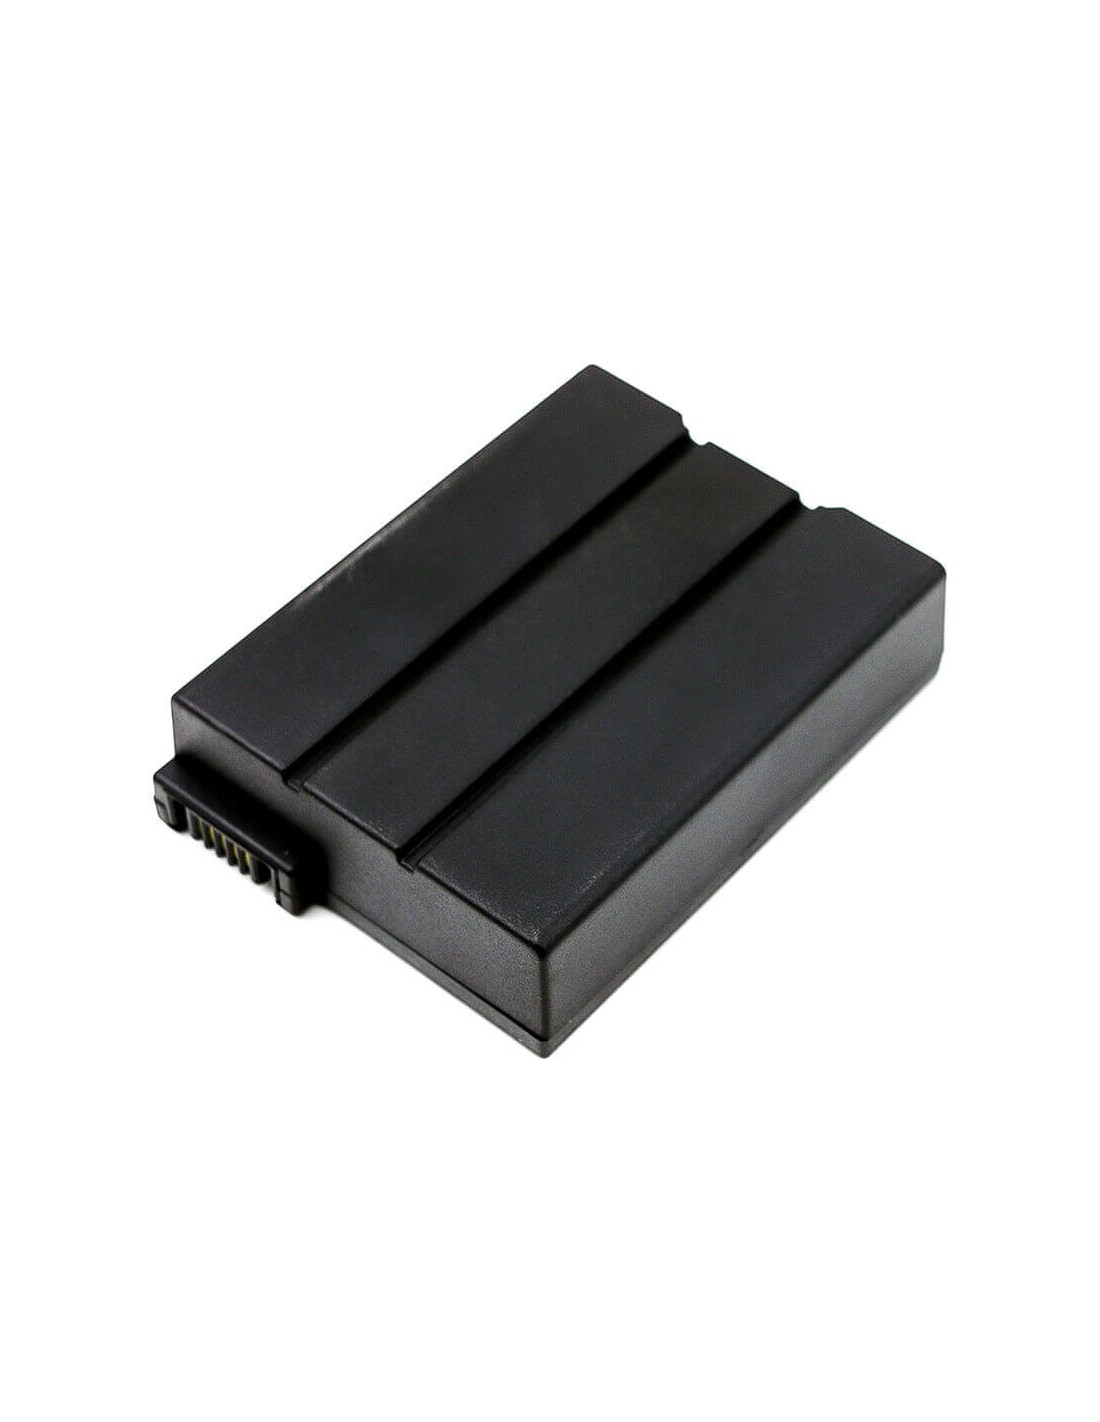 Battery for Cisco 4033435, Flk644a, Pb013, Smpcm1, Foxlink, Flk644a 10.8V, 2200mAh - 23.76Wh